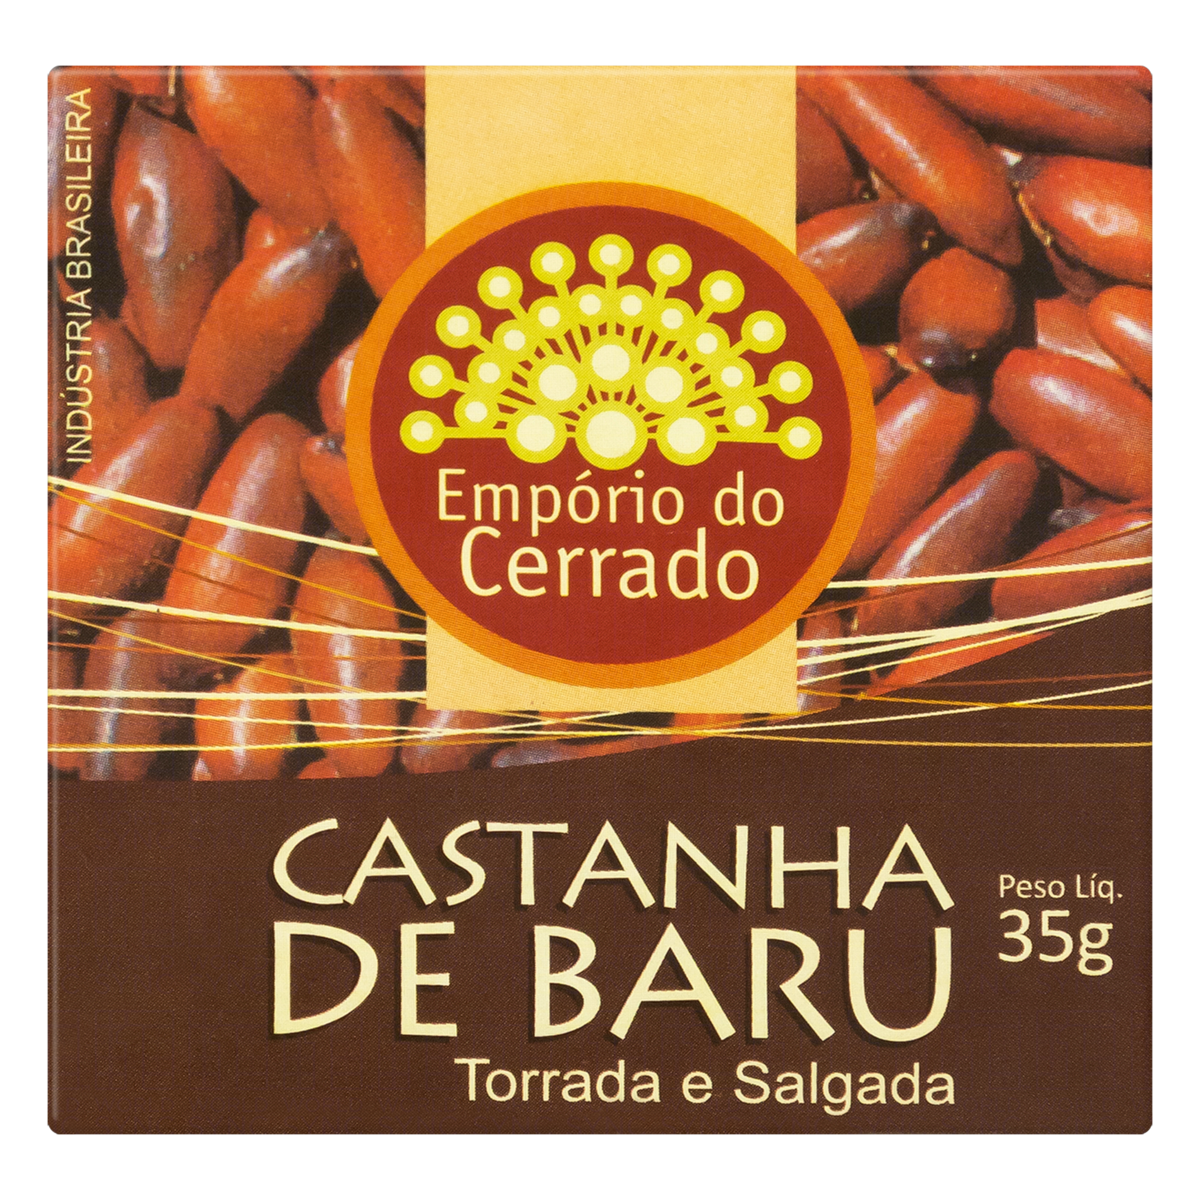 7898340610026 - CASTANHA-DE-BARU TORRADA E SALGADA EMPÓRIO DO CERRADO CAIXA 35G